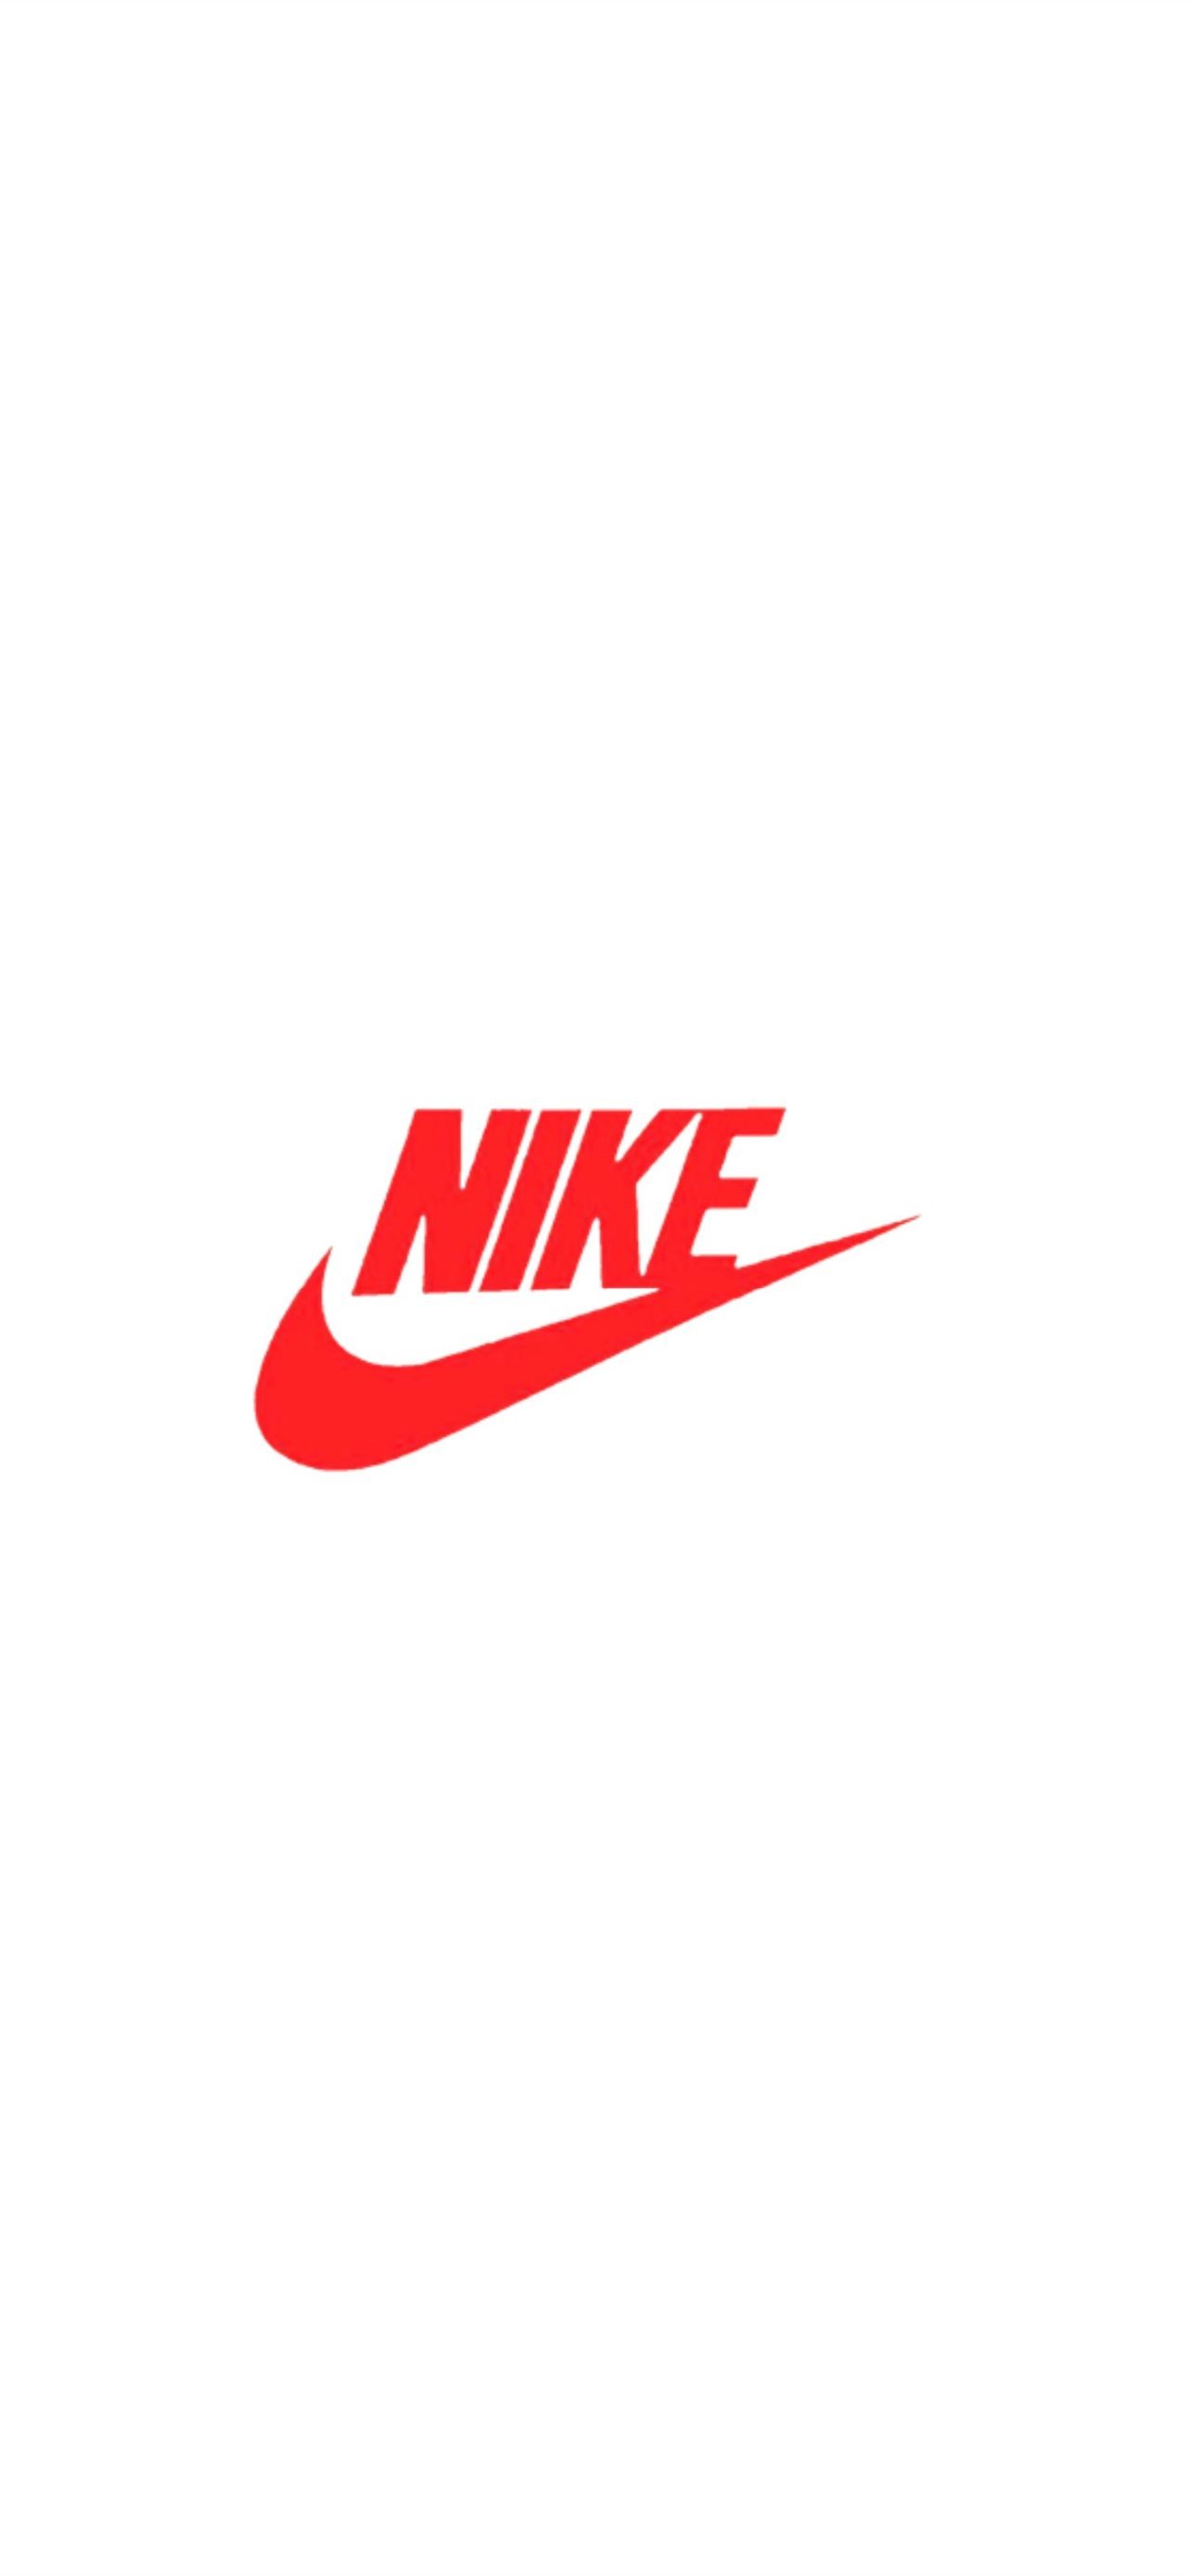 Nike logo red iPhone Wallpaper Free Download